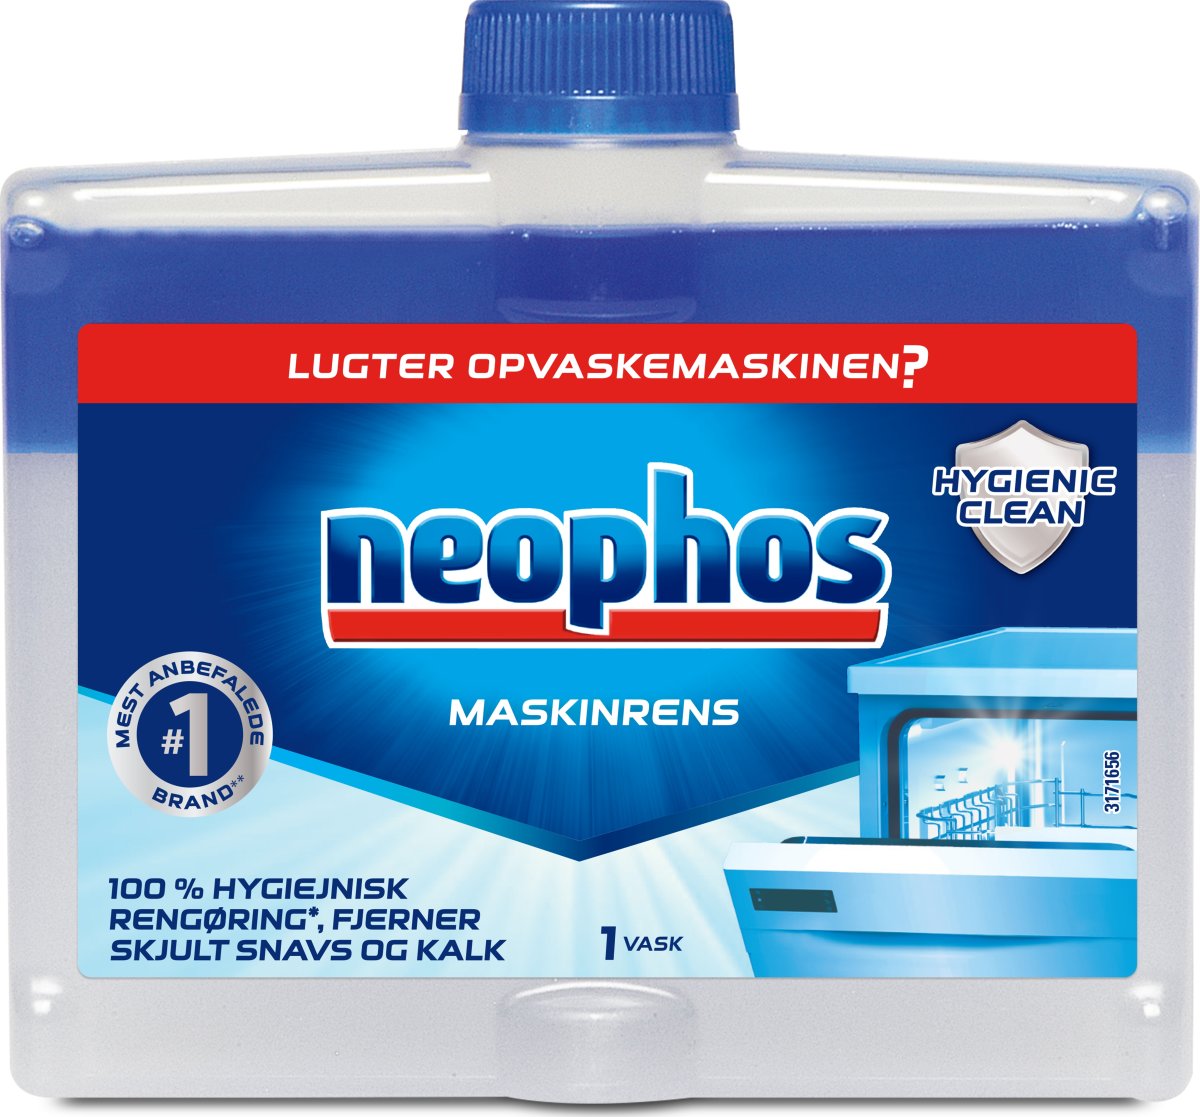 Neophos Maskinrens, flydende, 250 ml